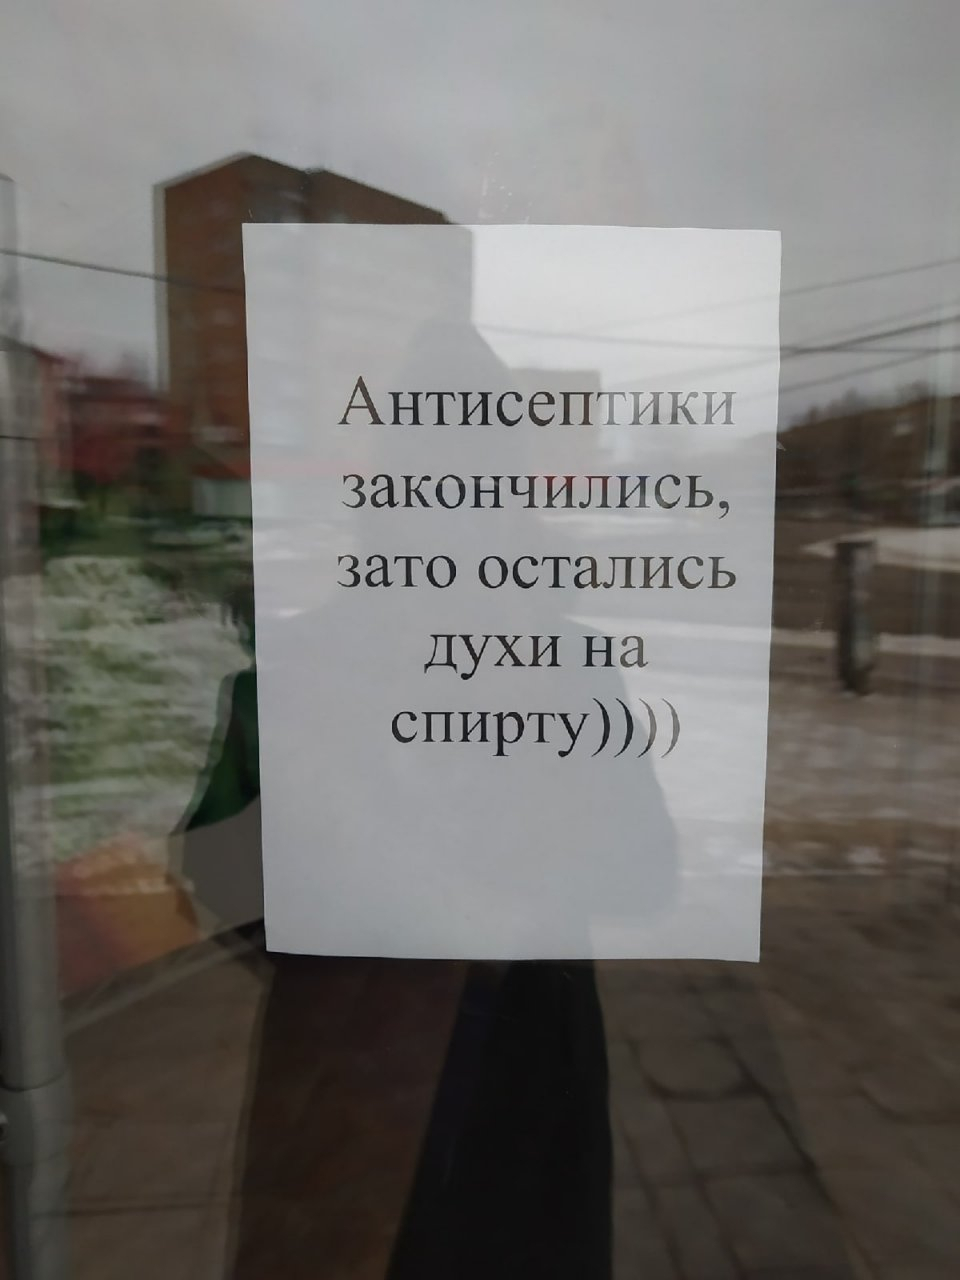 Фото дня в Сыктывкаре: антисептиков нет, но вы держитесь